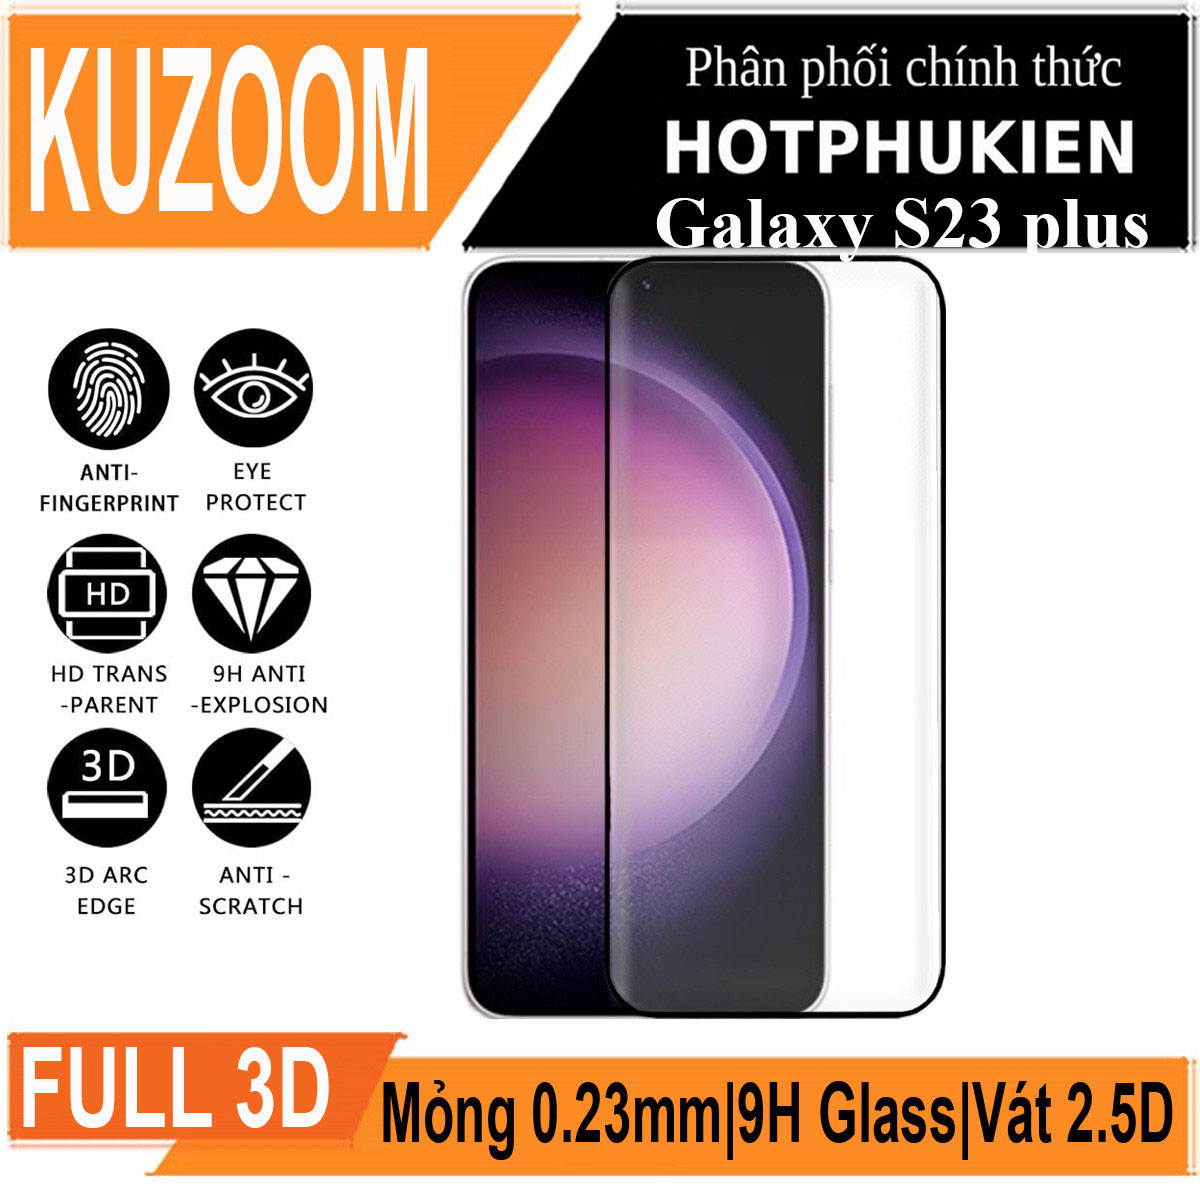 Miếng dán kính cường lực 3D cho Samsung Galaxy S23 Plus / S23+ hiệu Kuzoom Protective Glass - mỏng 0.3mm, vát cạnh 2.5D, độ cứng 9H, viền cứng mỏng